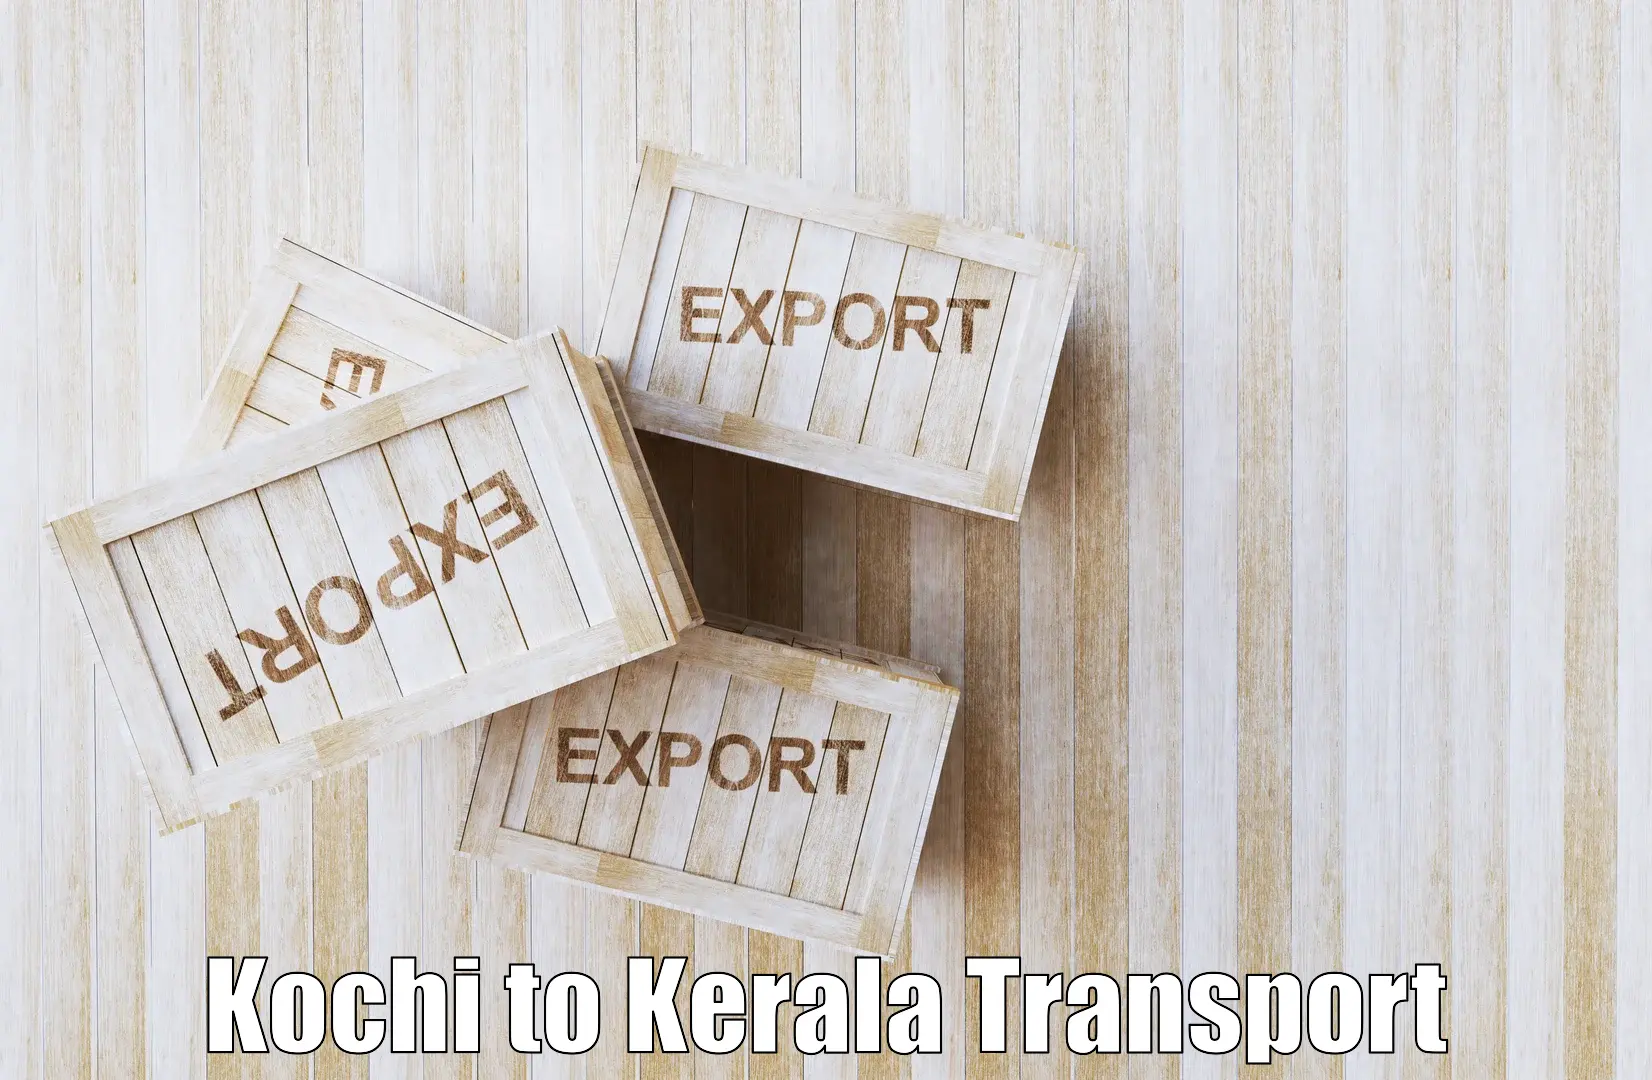 Nearby transport service Kochi to Kozhencherry